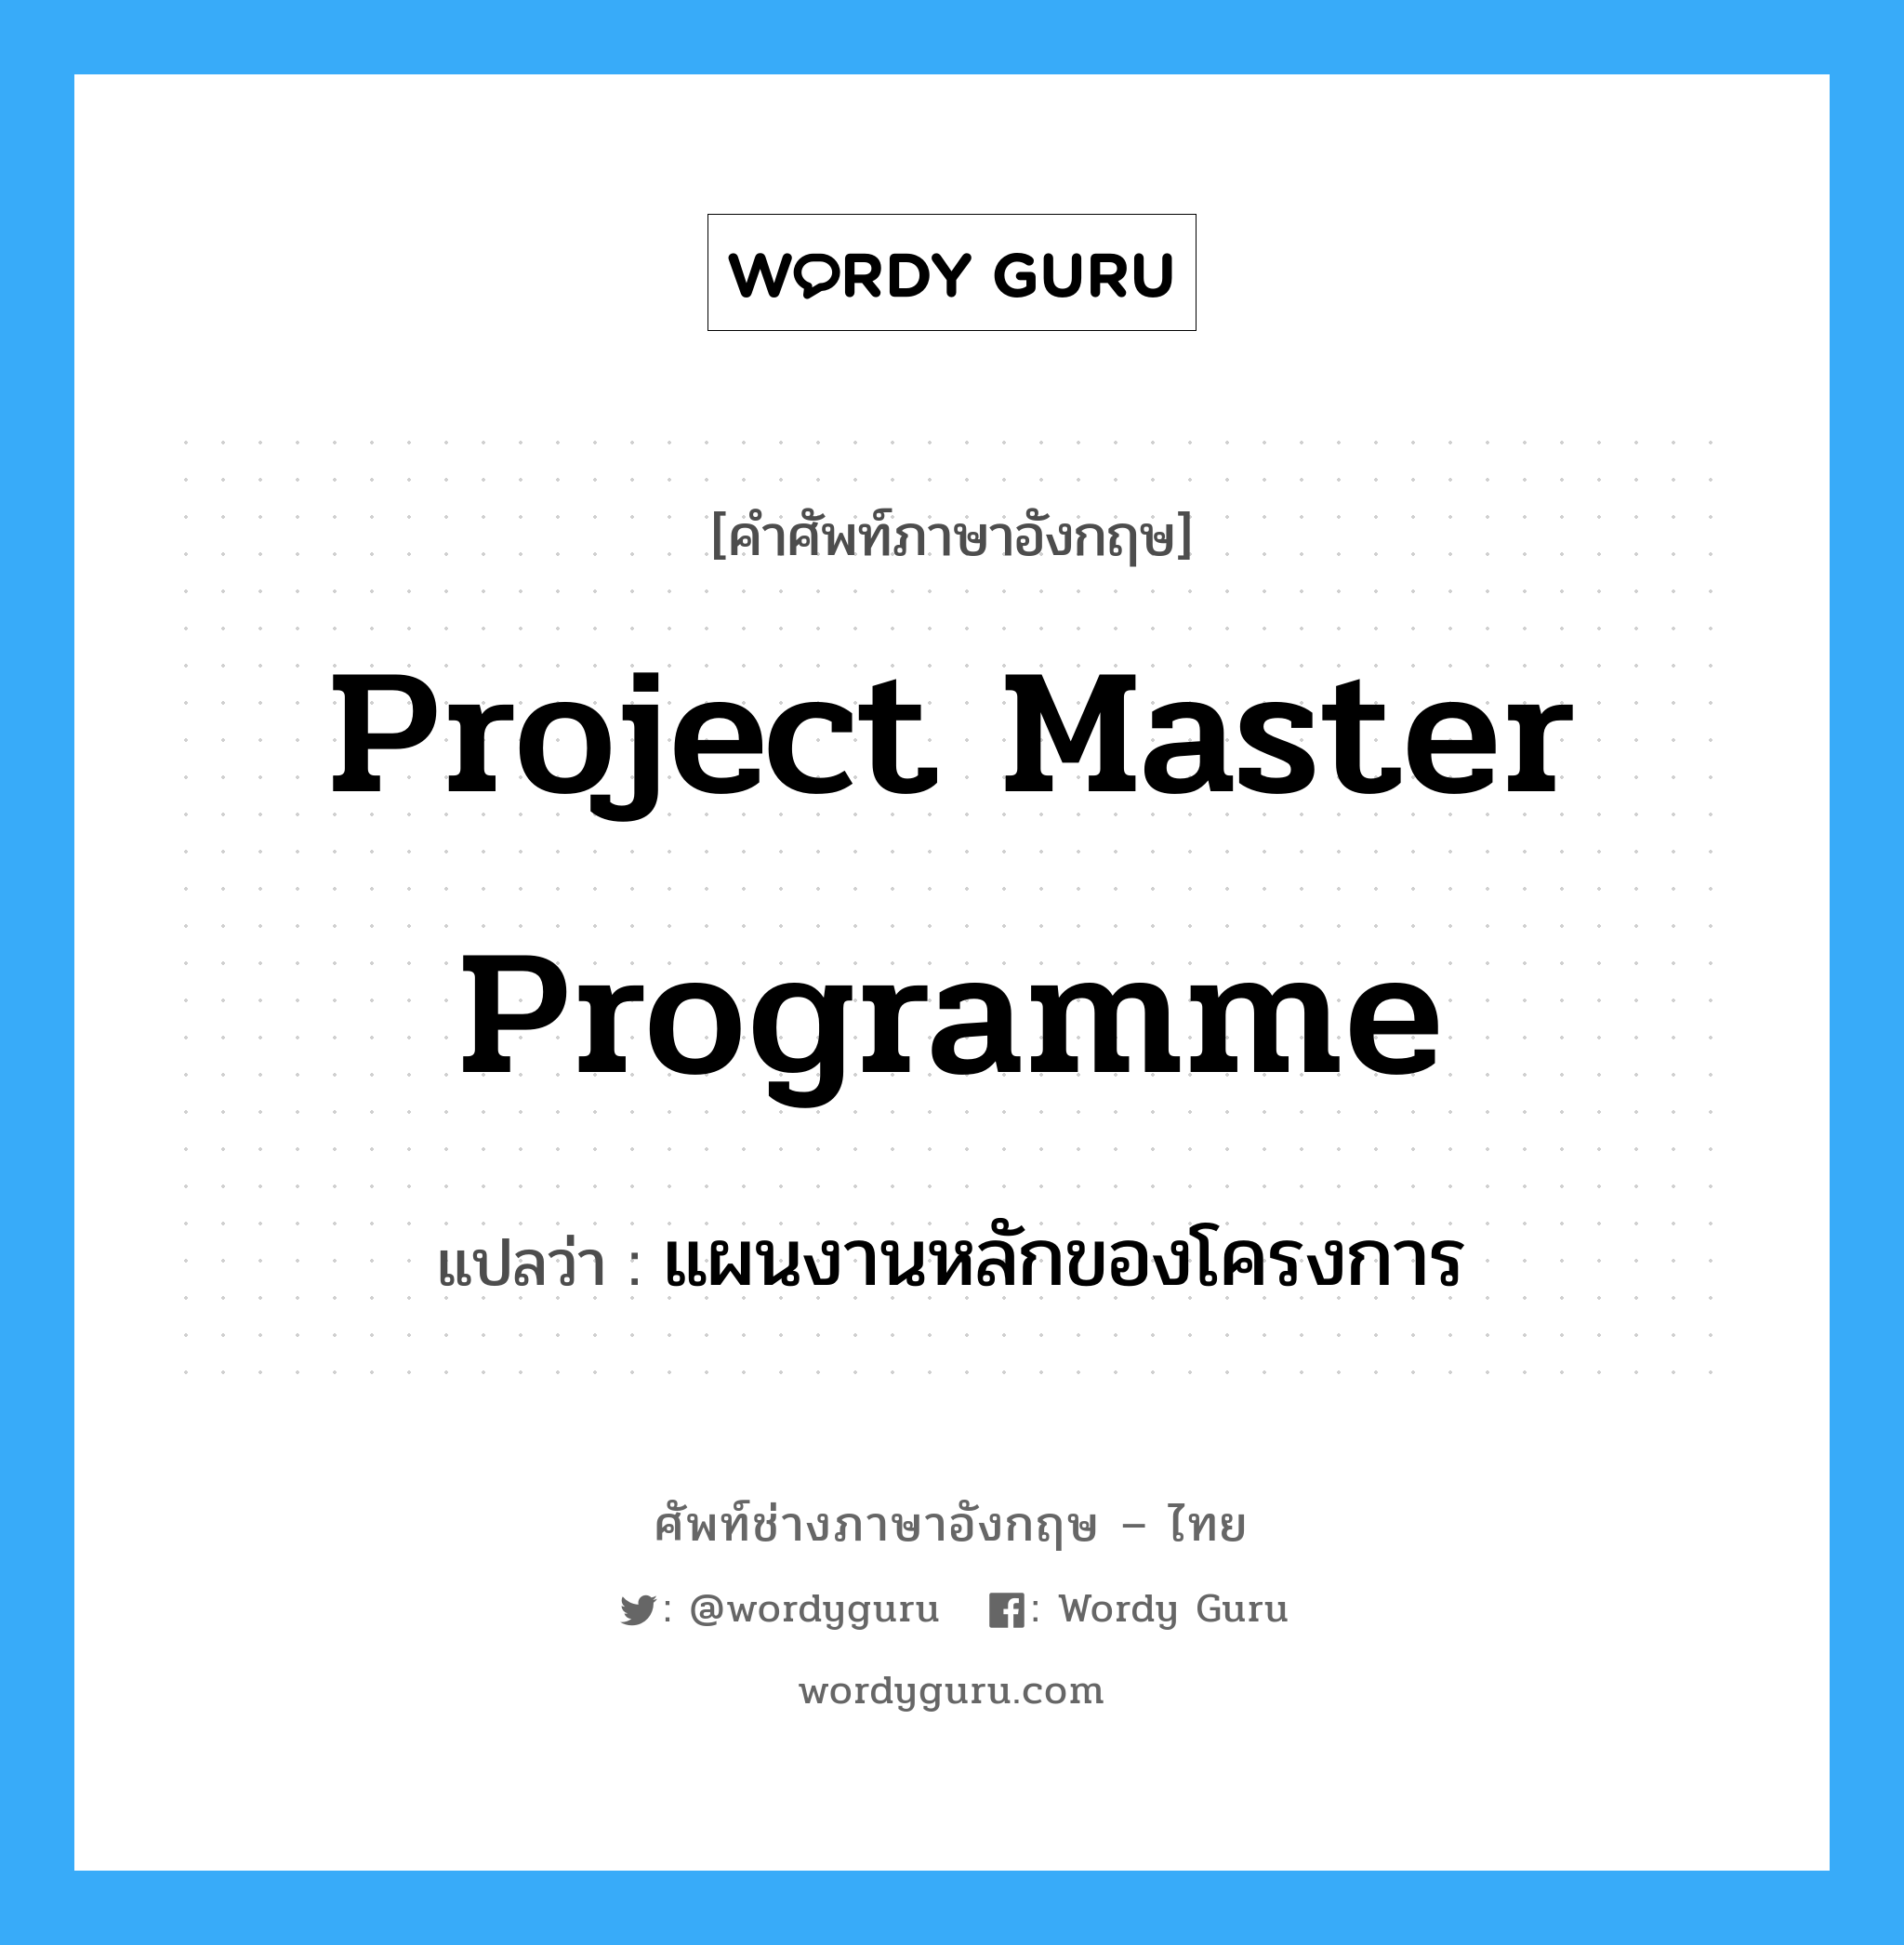 Project Master Programme แปลว่า?, คำศัพท์ช่างภาษาอังกฤษ - ไทย Project Master Programme คำศัพท์ภาษาอังกฤษ Project Master Programme แปลว่า แผนงานหลักของโครงการ